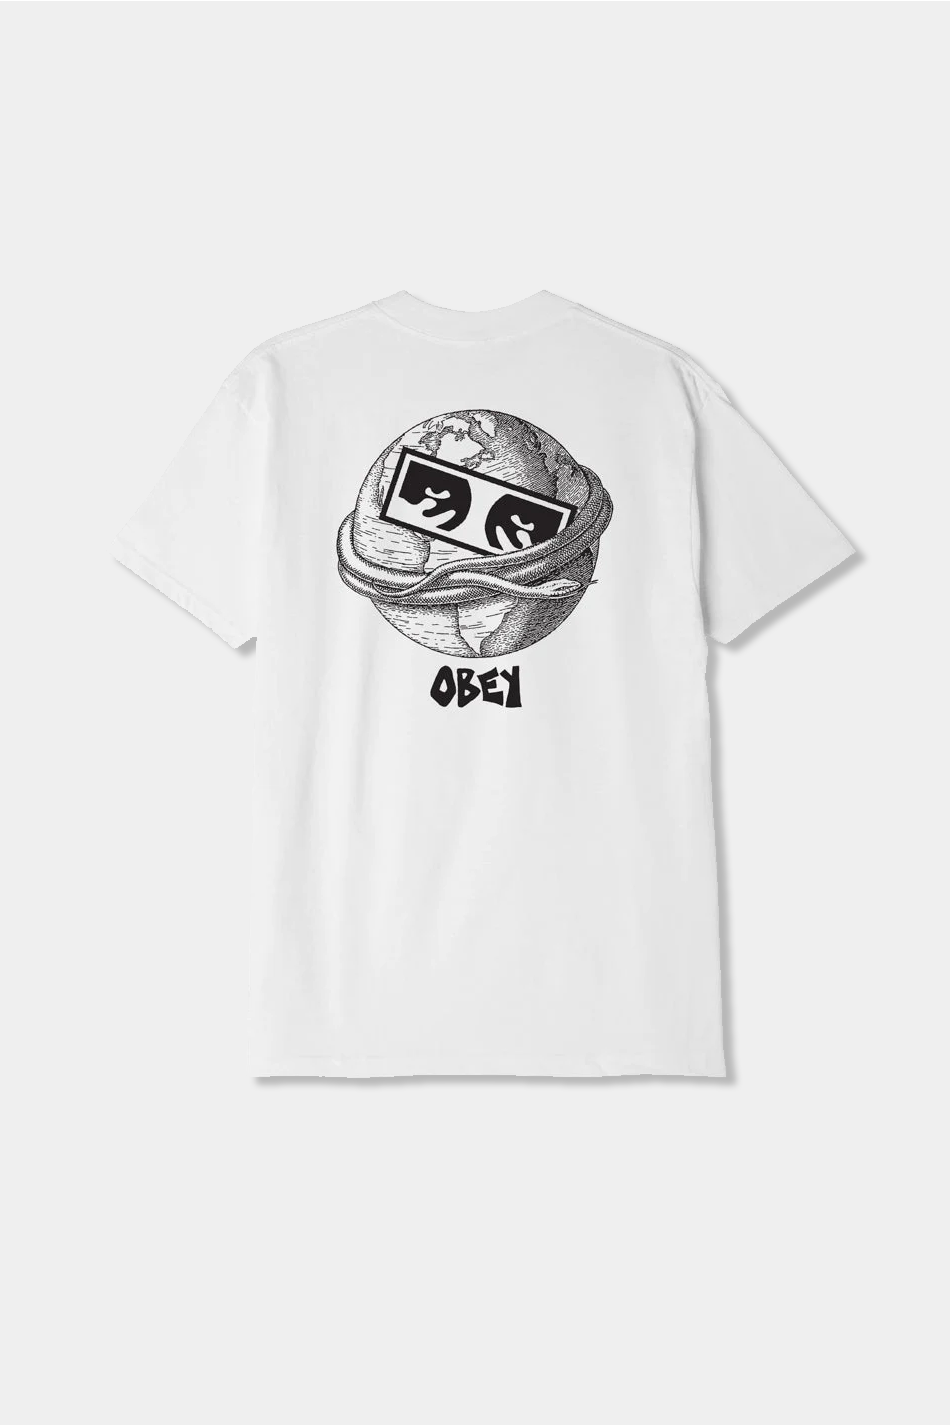 White Obey Ouroboros T-shirt